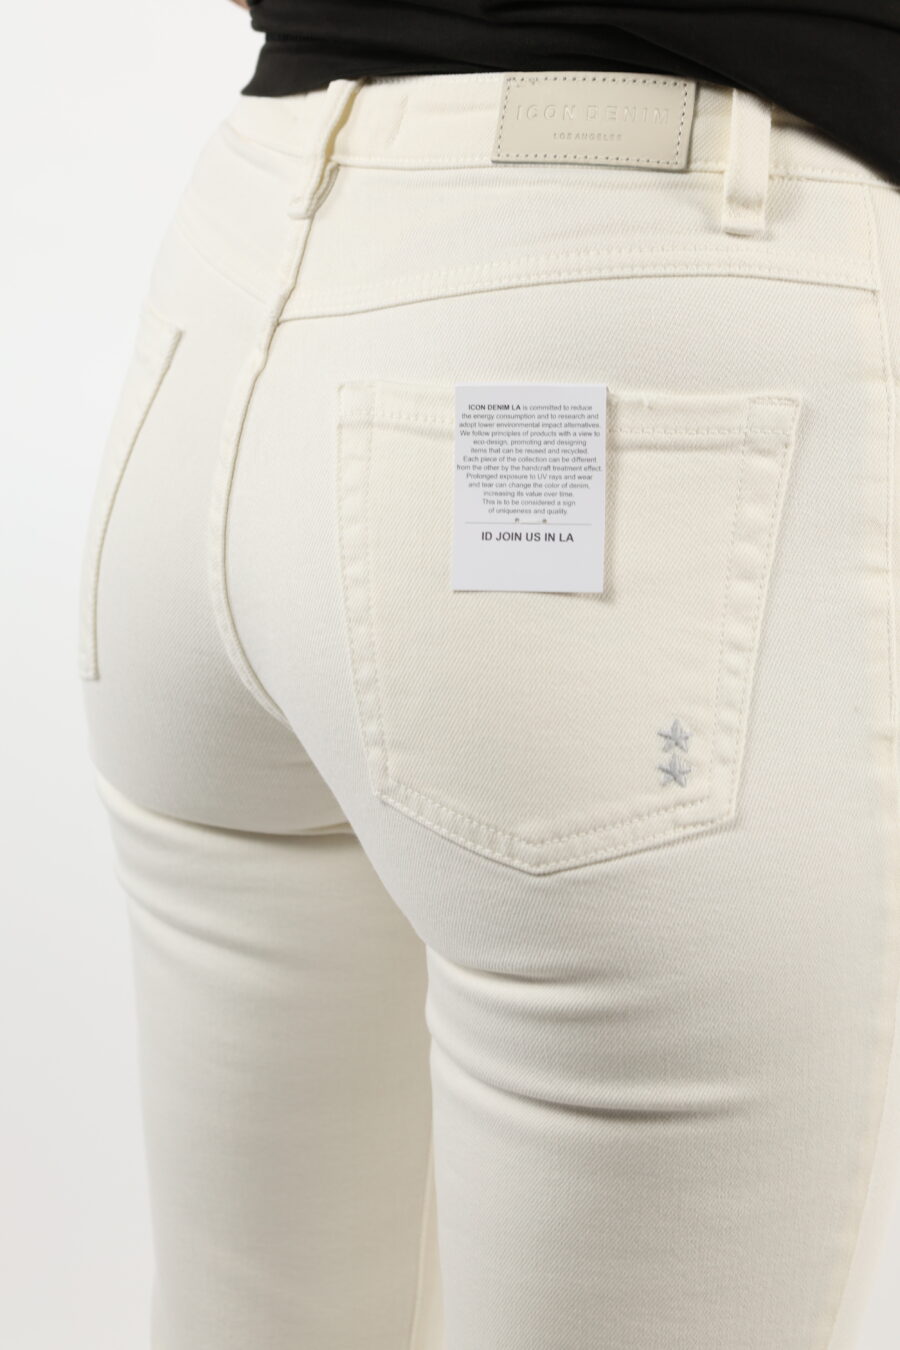 Pantalón blanco crema "Pam" con bota ancha - 110678